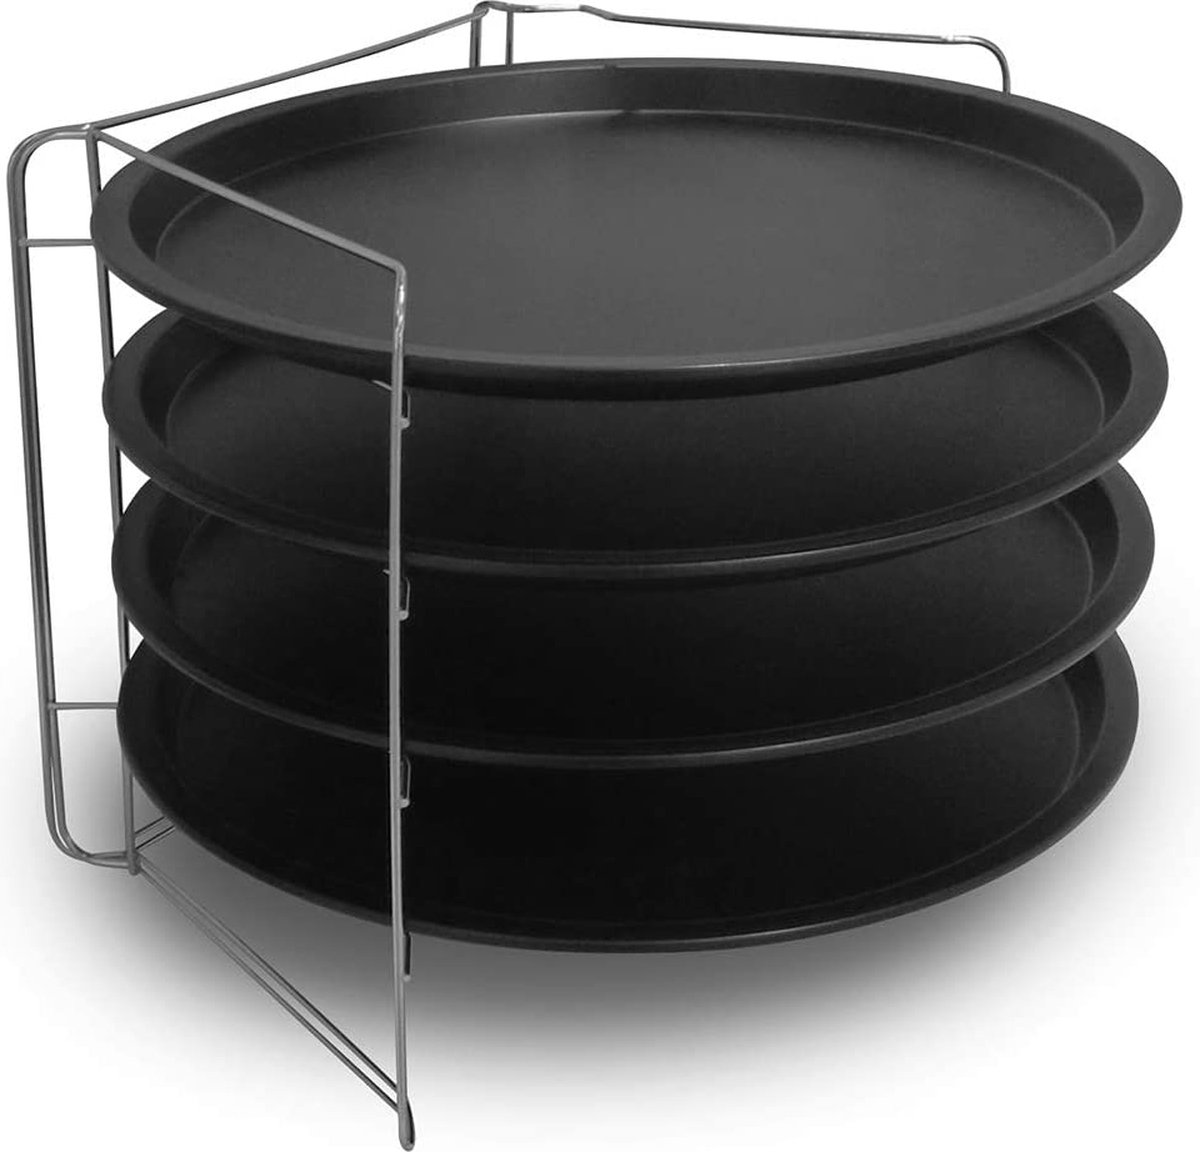 Set van 4 diepe pizzaplaten (32 cm) - staal met dubbele antiaanbaklaag, zwart, inclusief 1 ruimtebesparend inklapbaar stalen frame